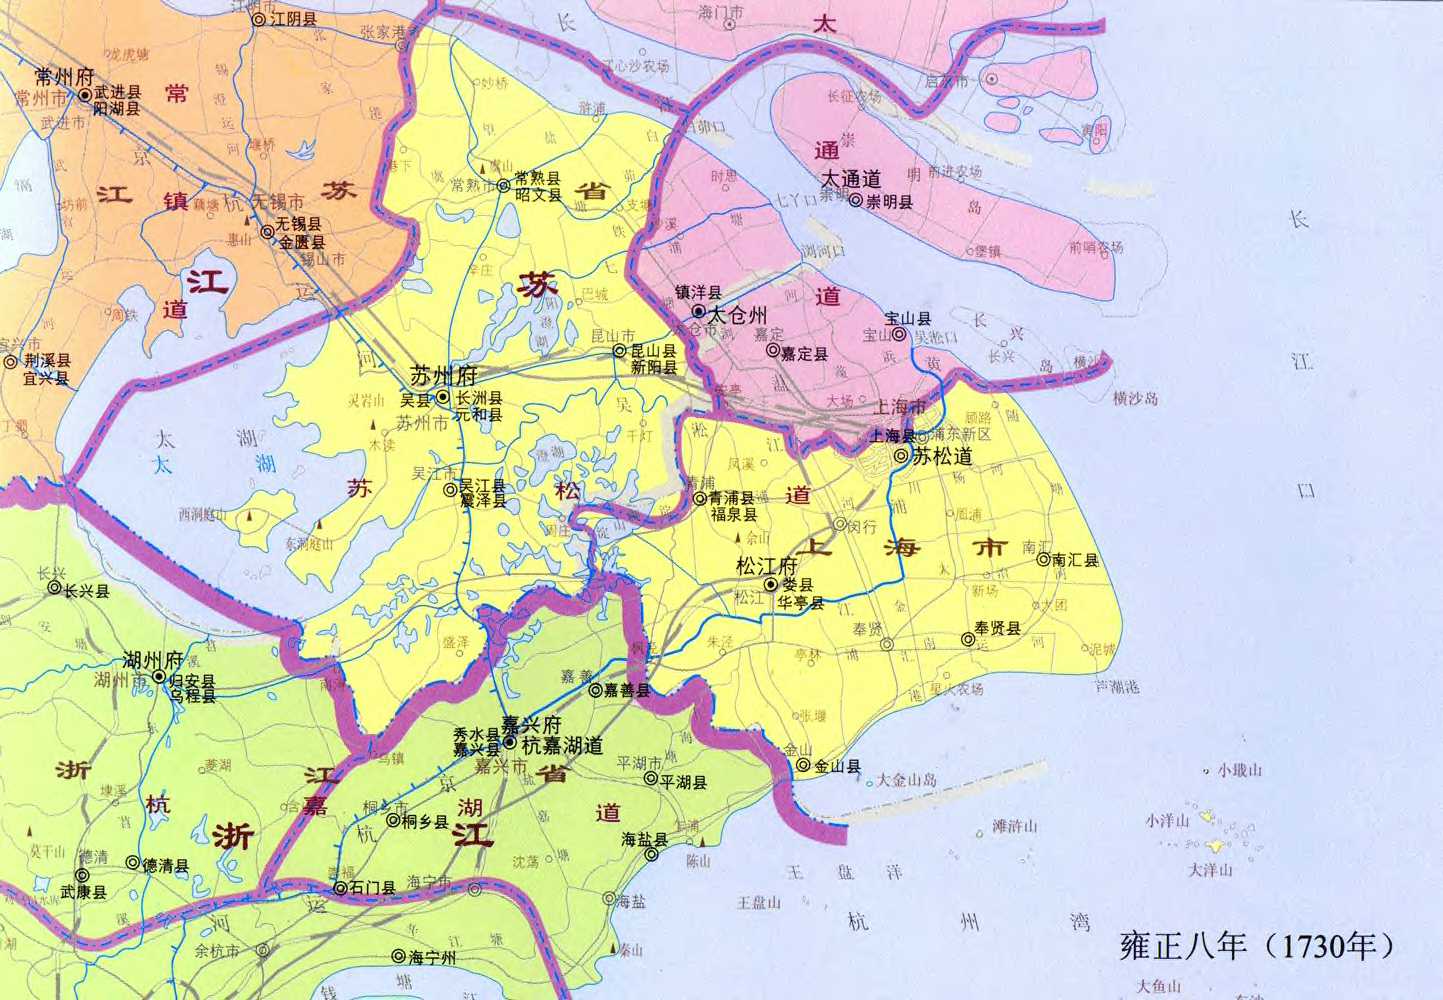 【精华】对照旧上海地图,看看你家当年坐落在什么区?_爱卡汽车